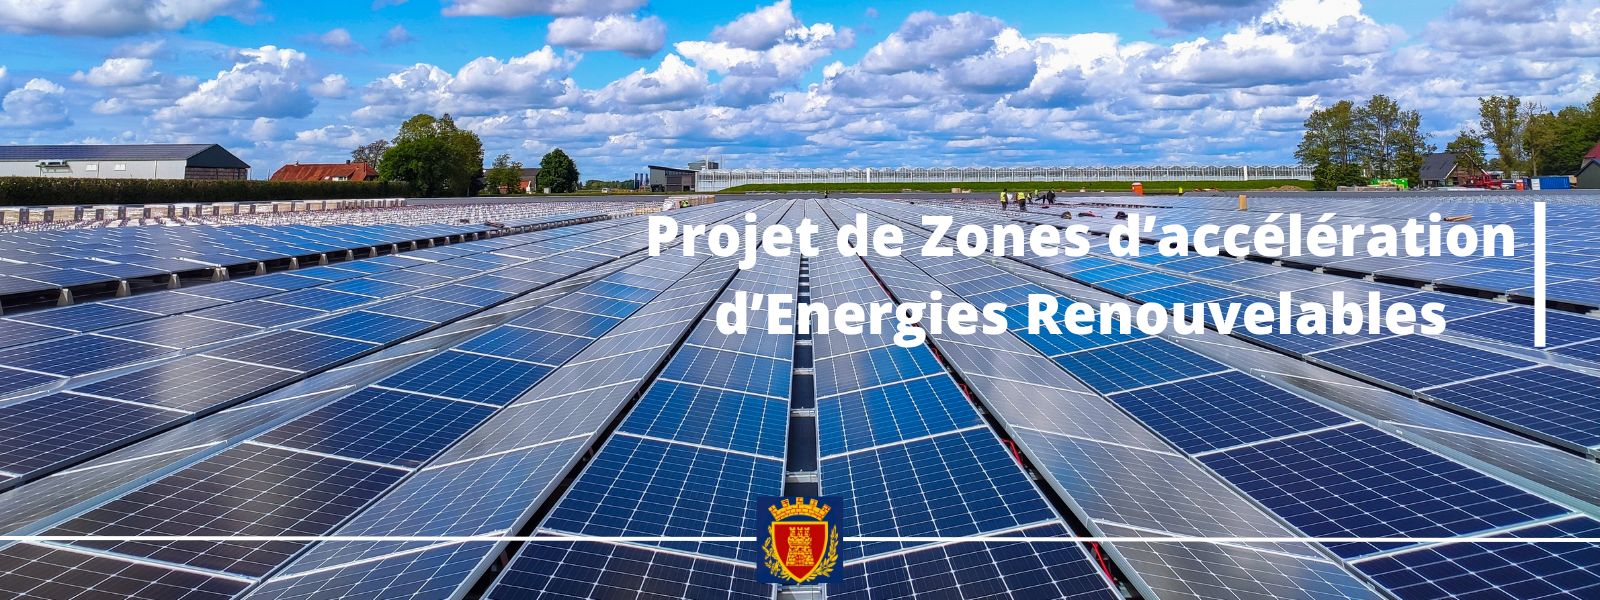 Consultation publique - Projet de Zones d’accélération d’Energies Renouvelables sur la commune de Grimaud